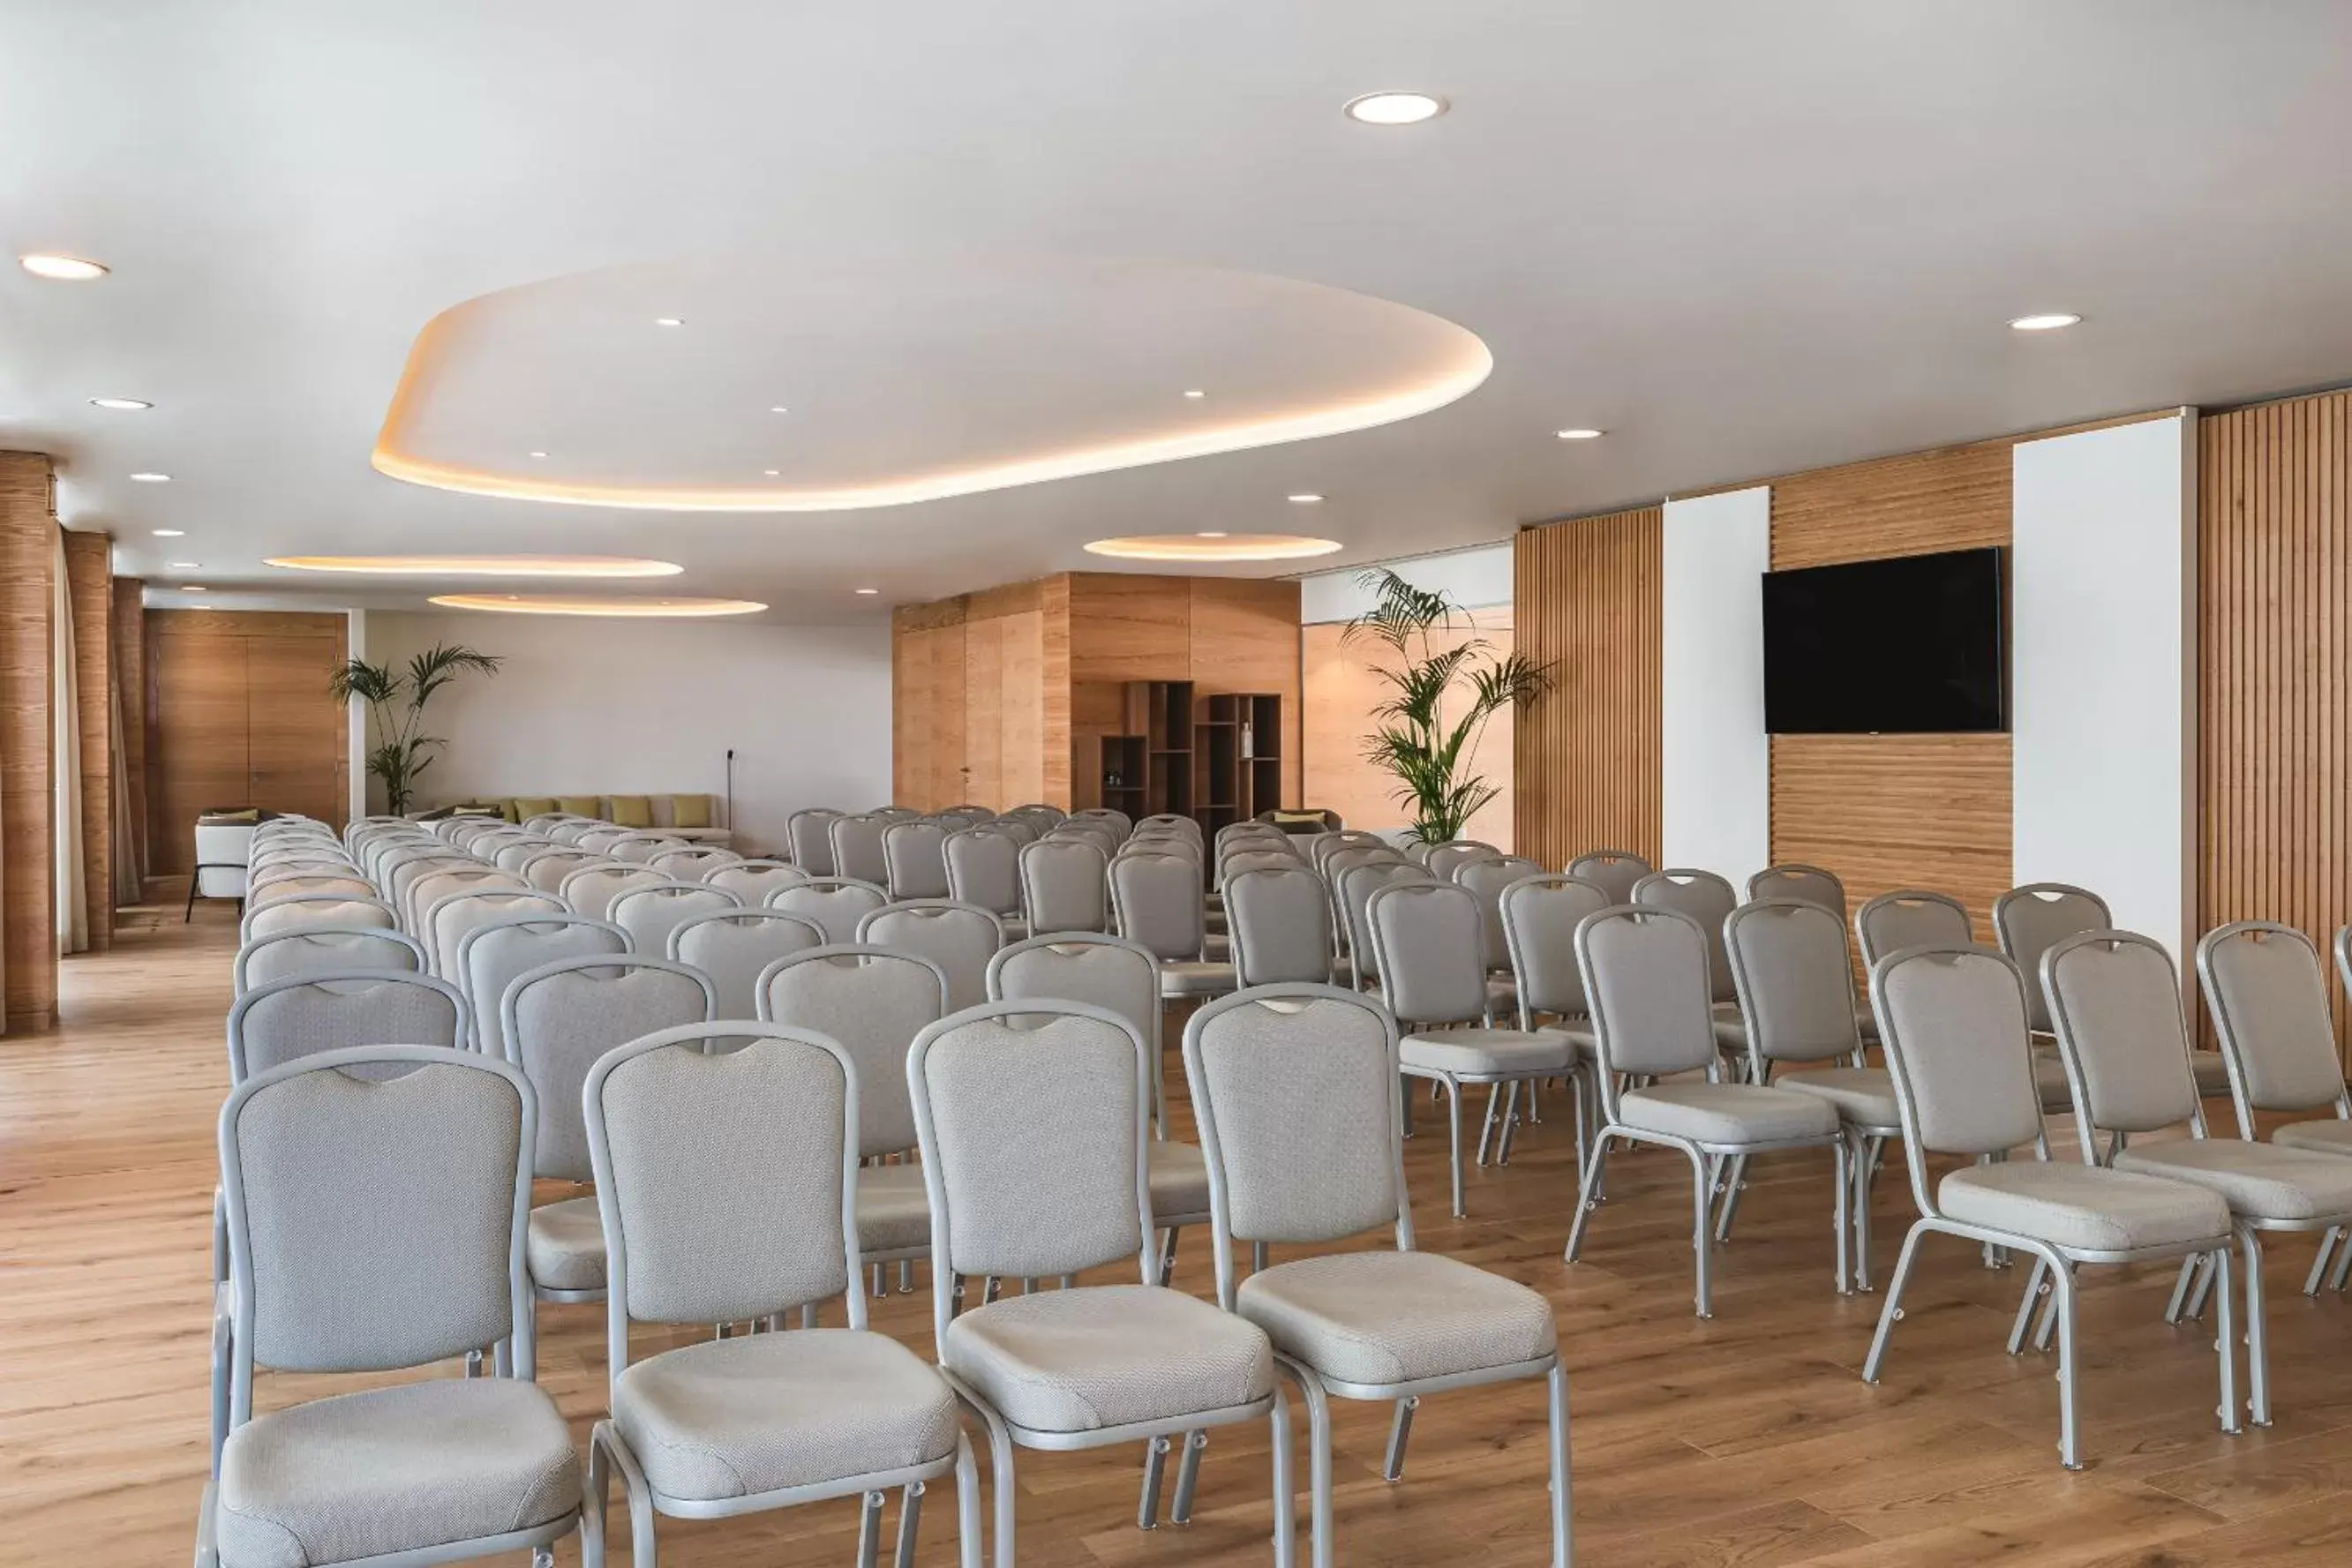 Meeting/conference room in Hyatt Regency Lisbon